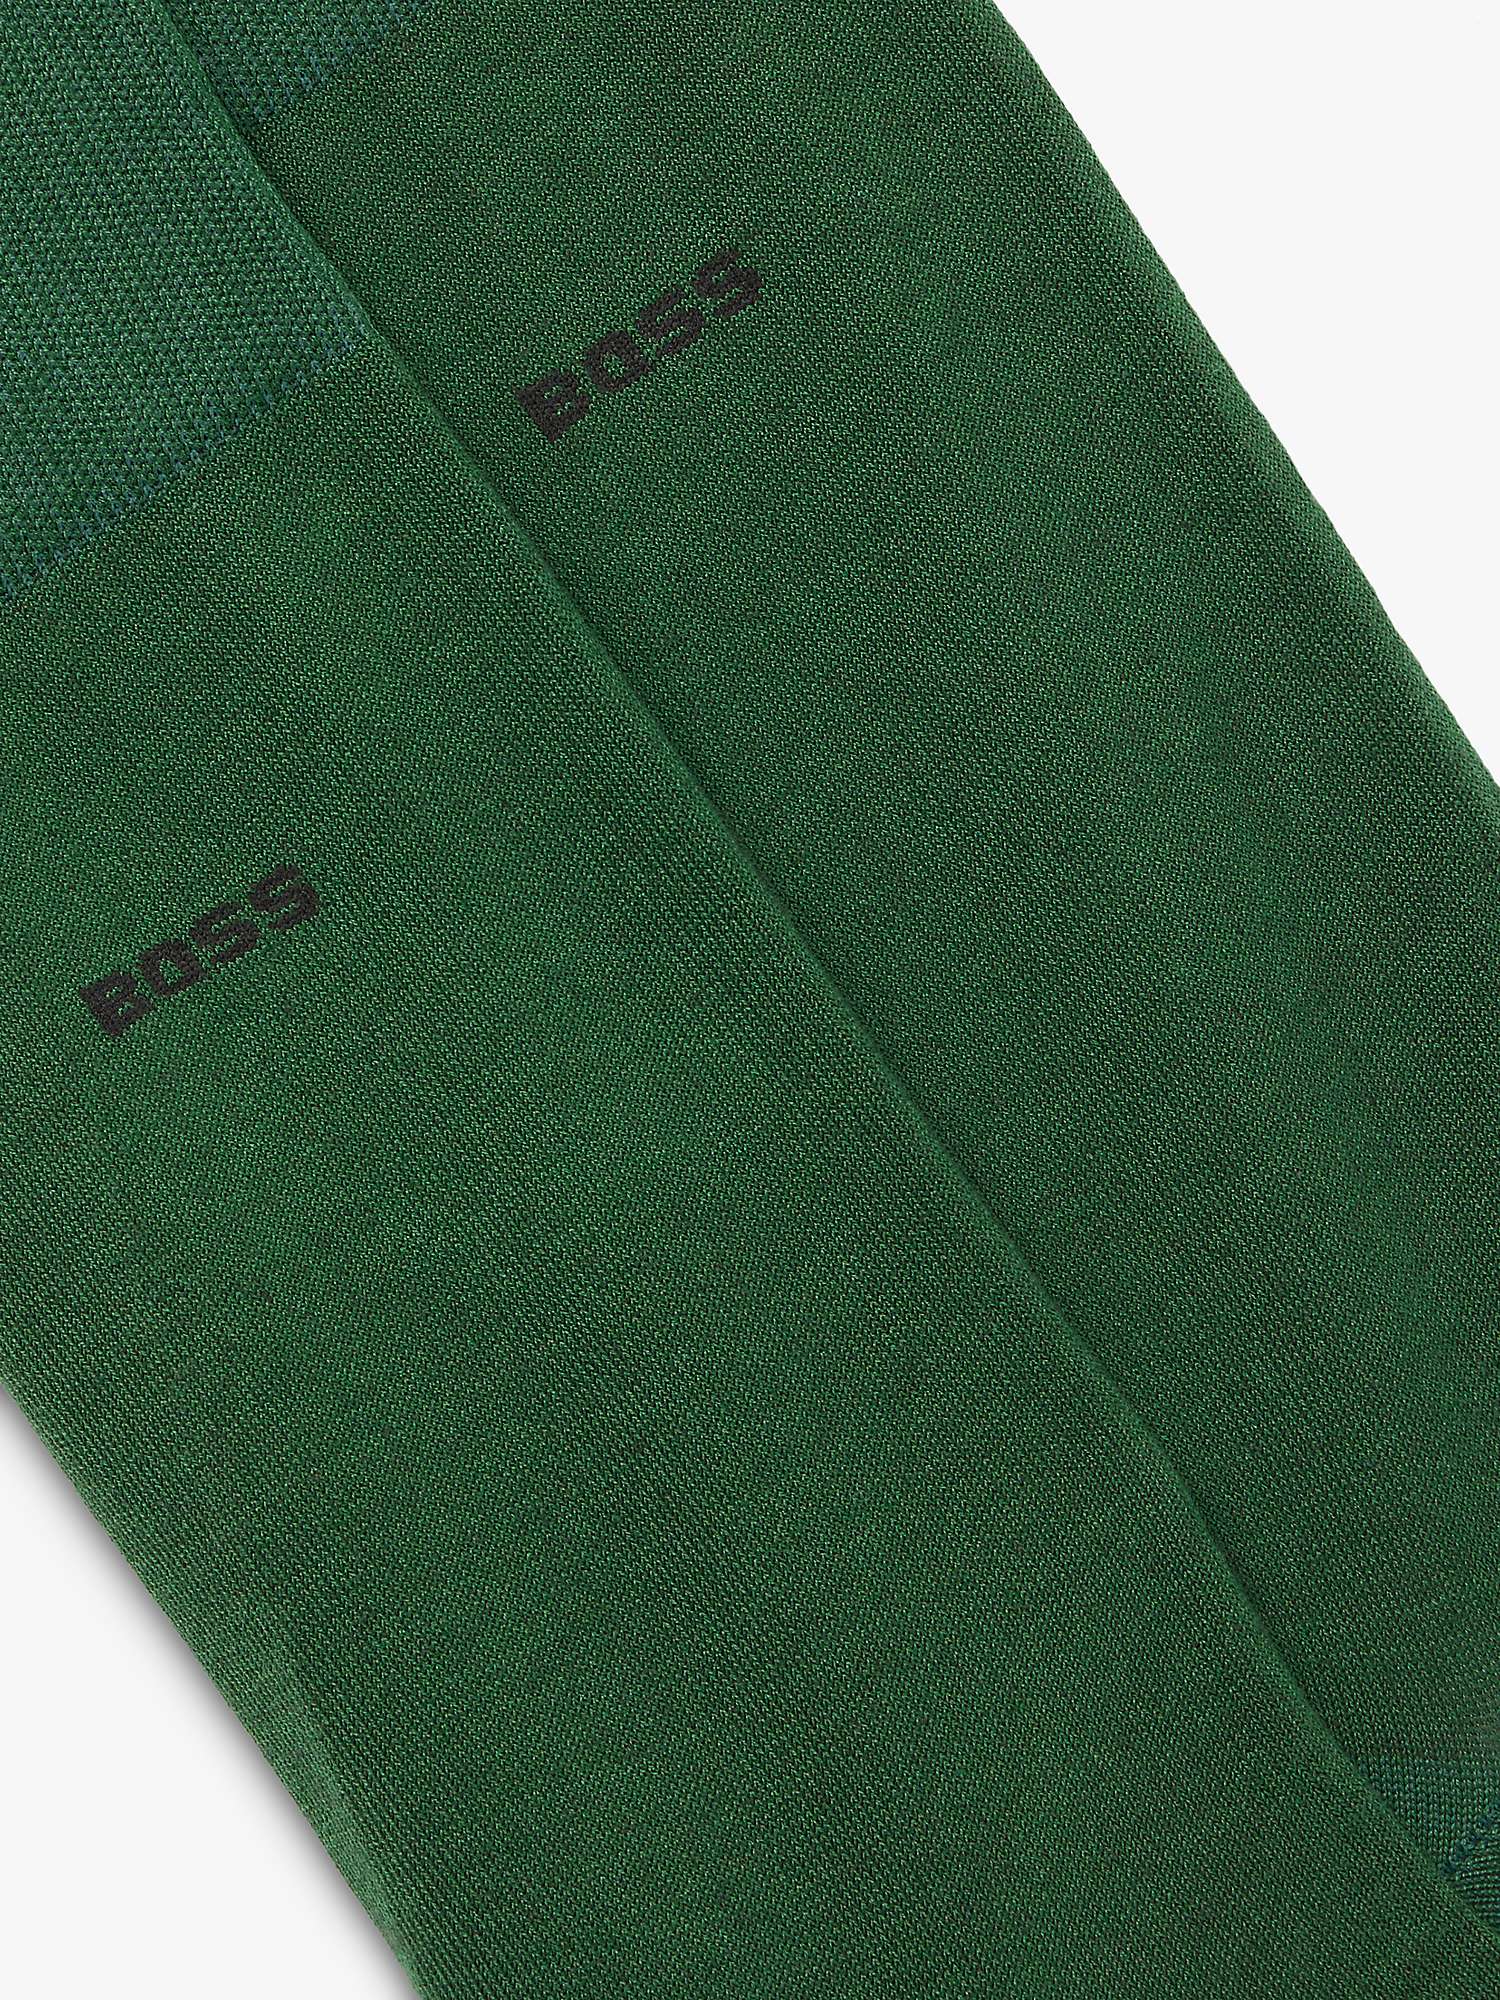 Buy BOSS Tom Logo Socks, Pack of 2 Online at johnlewis.com